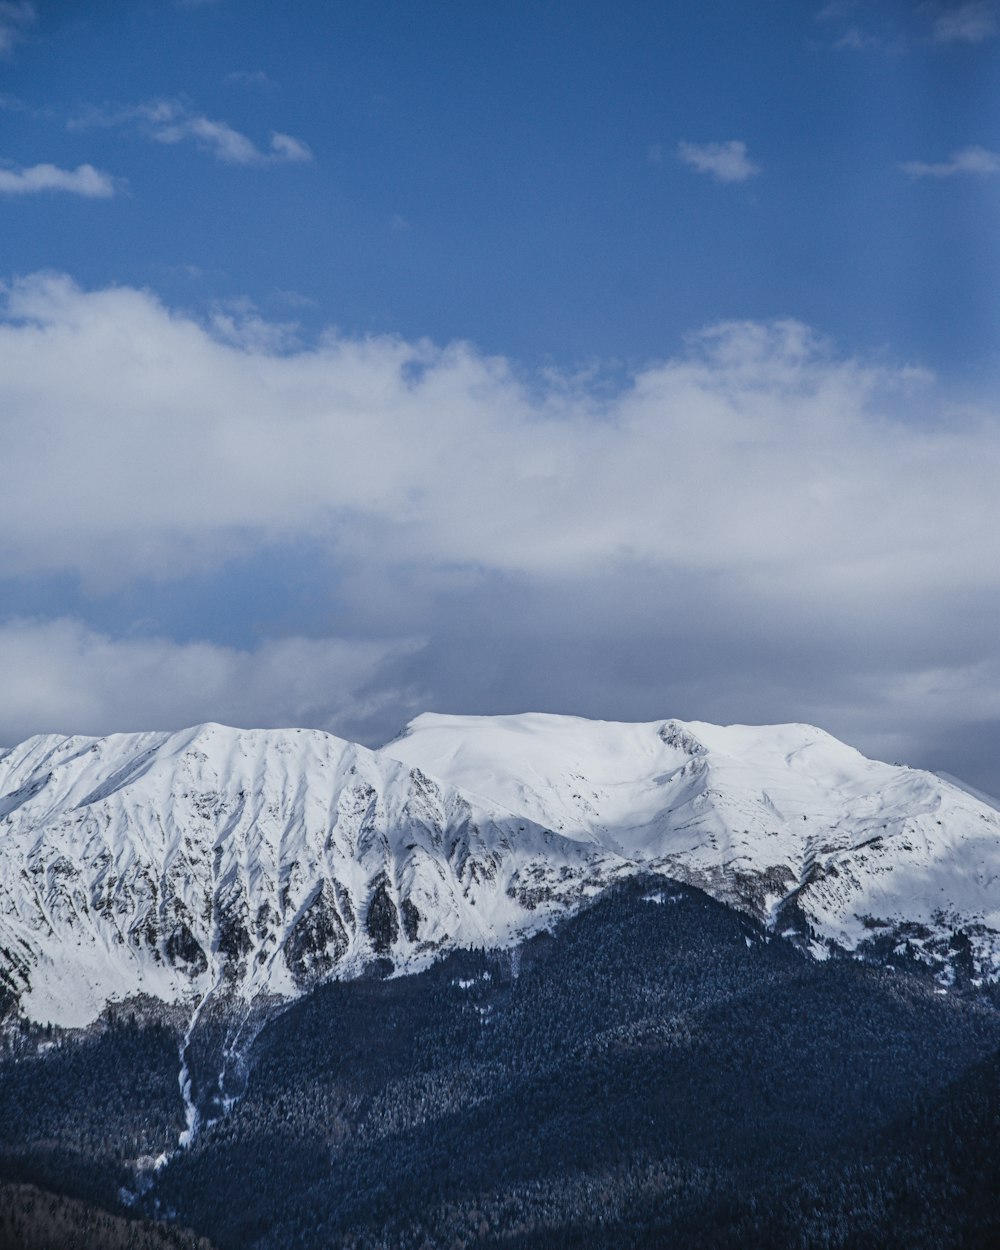 Fotografía aérea de la cumbre de la montaña cubierta de nieve bajo el cielo blanco y azul